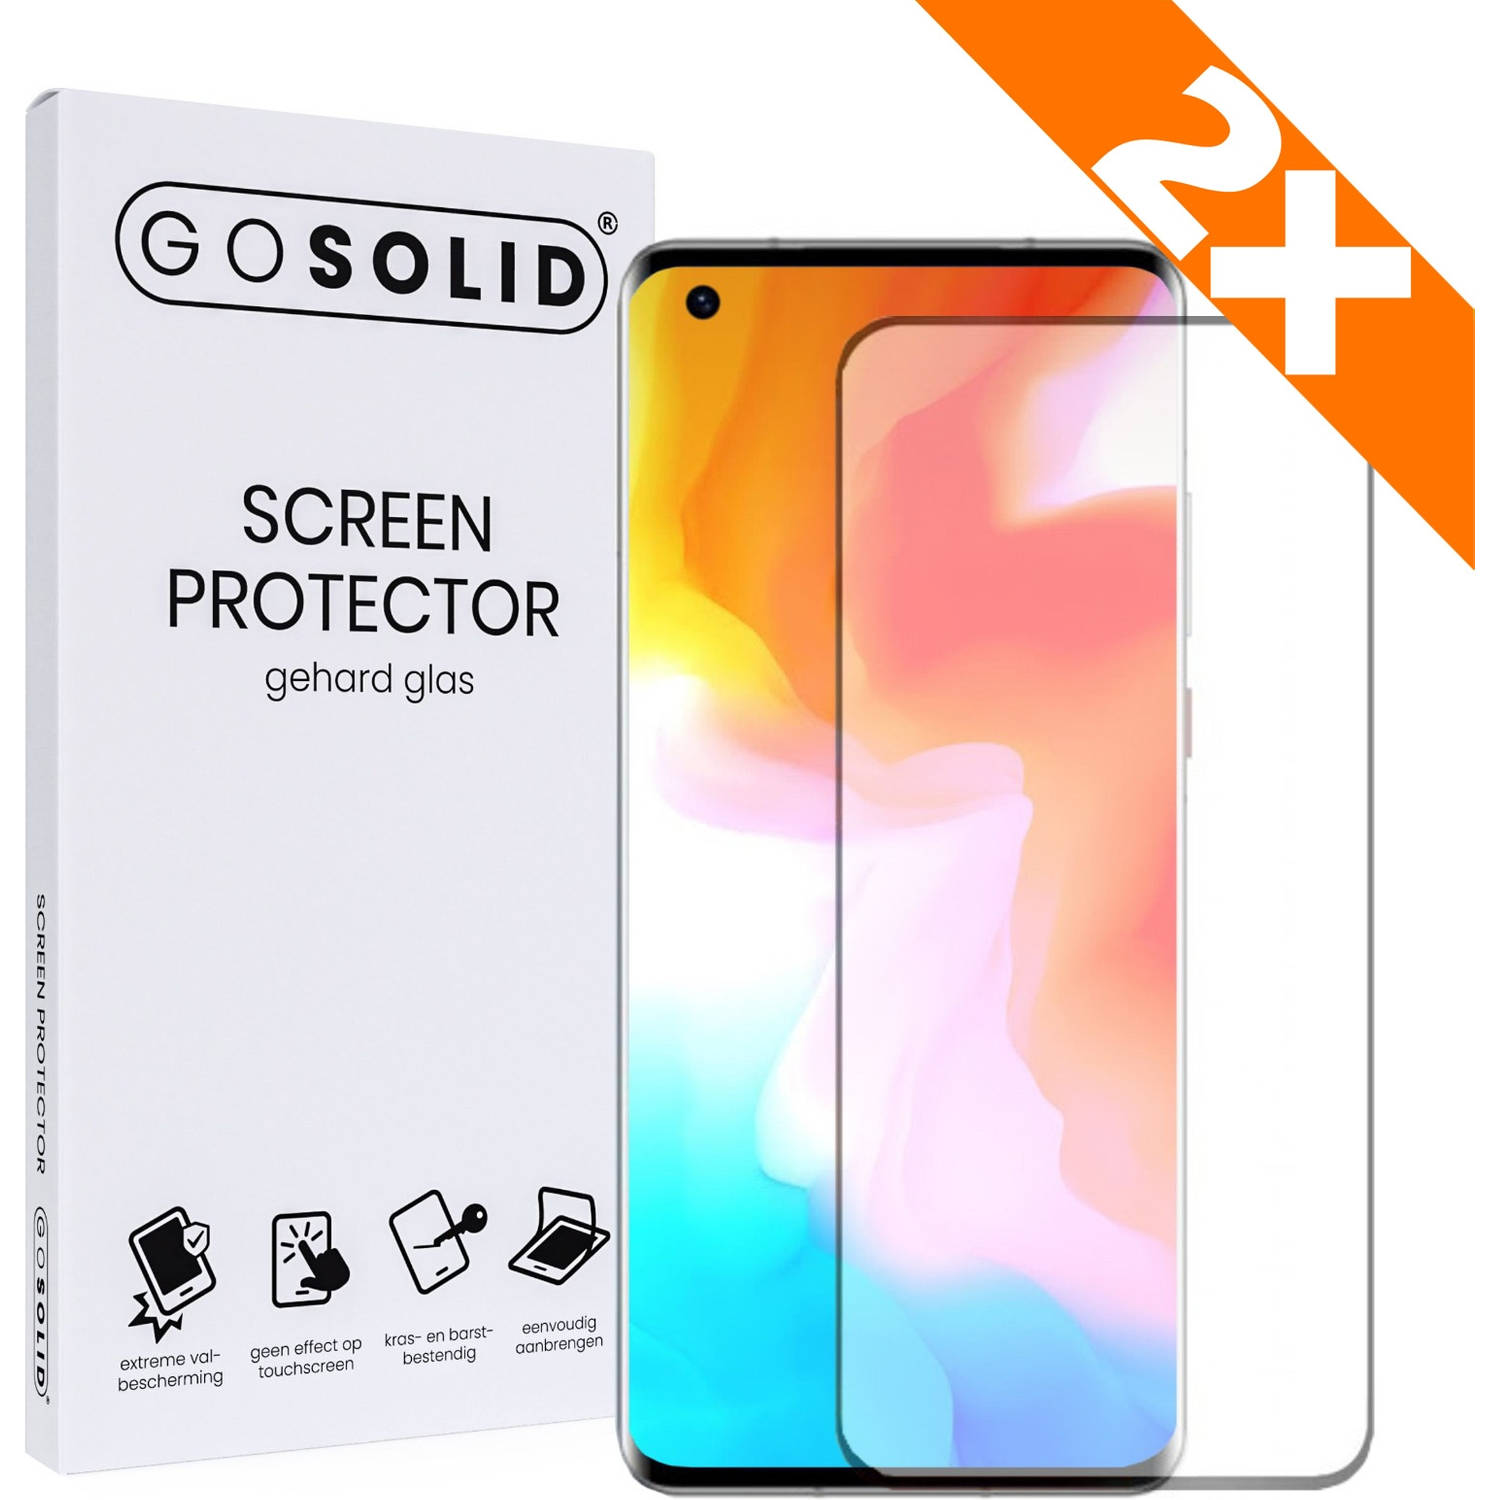 GO SOLID! Screenprotector voor Oppo Reno 7 gehard glas - Duopack